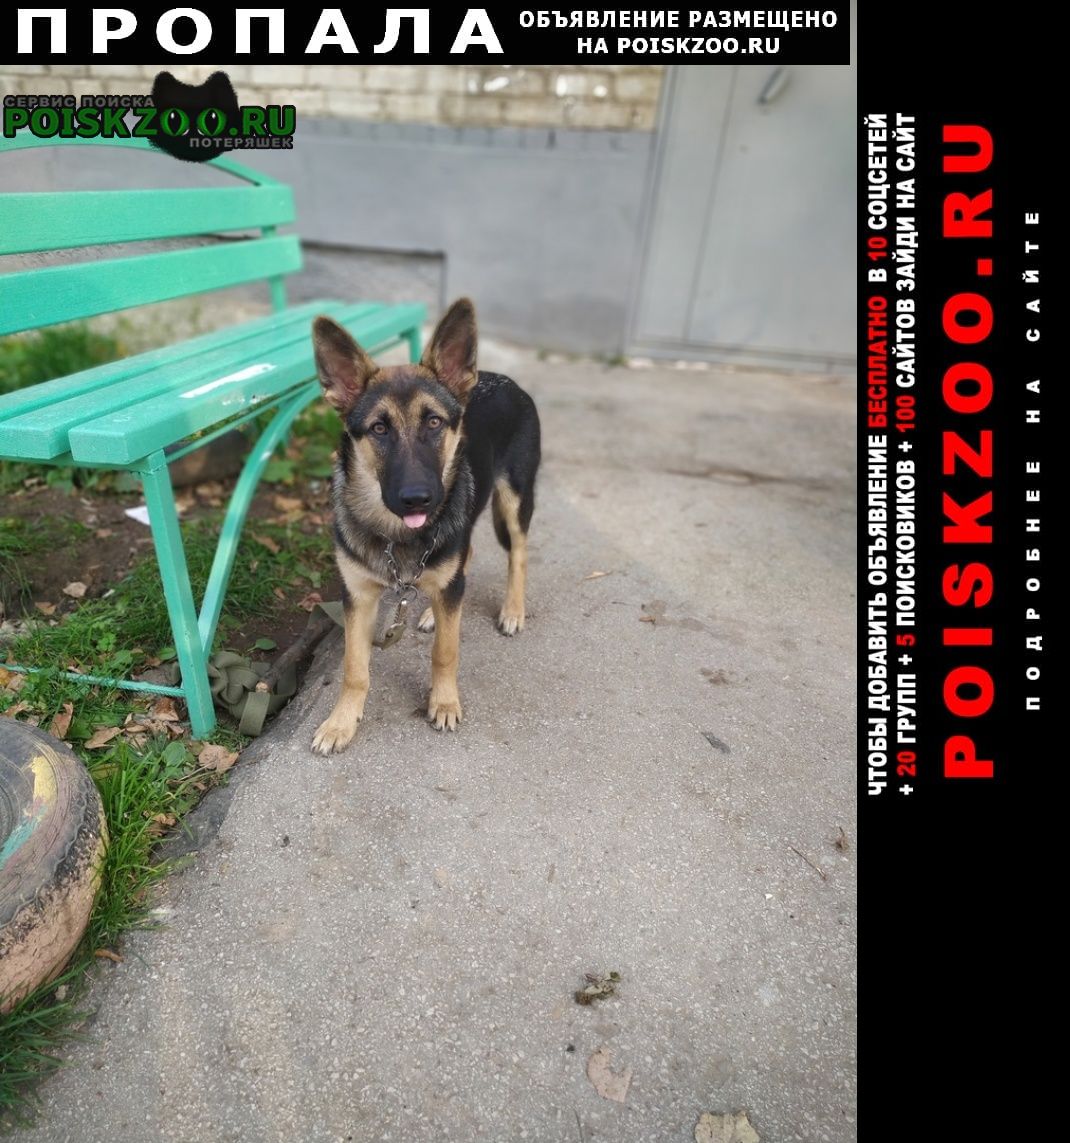 Пропала собака кобель помогите найти пса. зовут джек Пермь